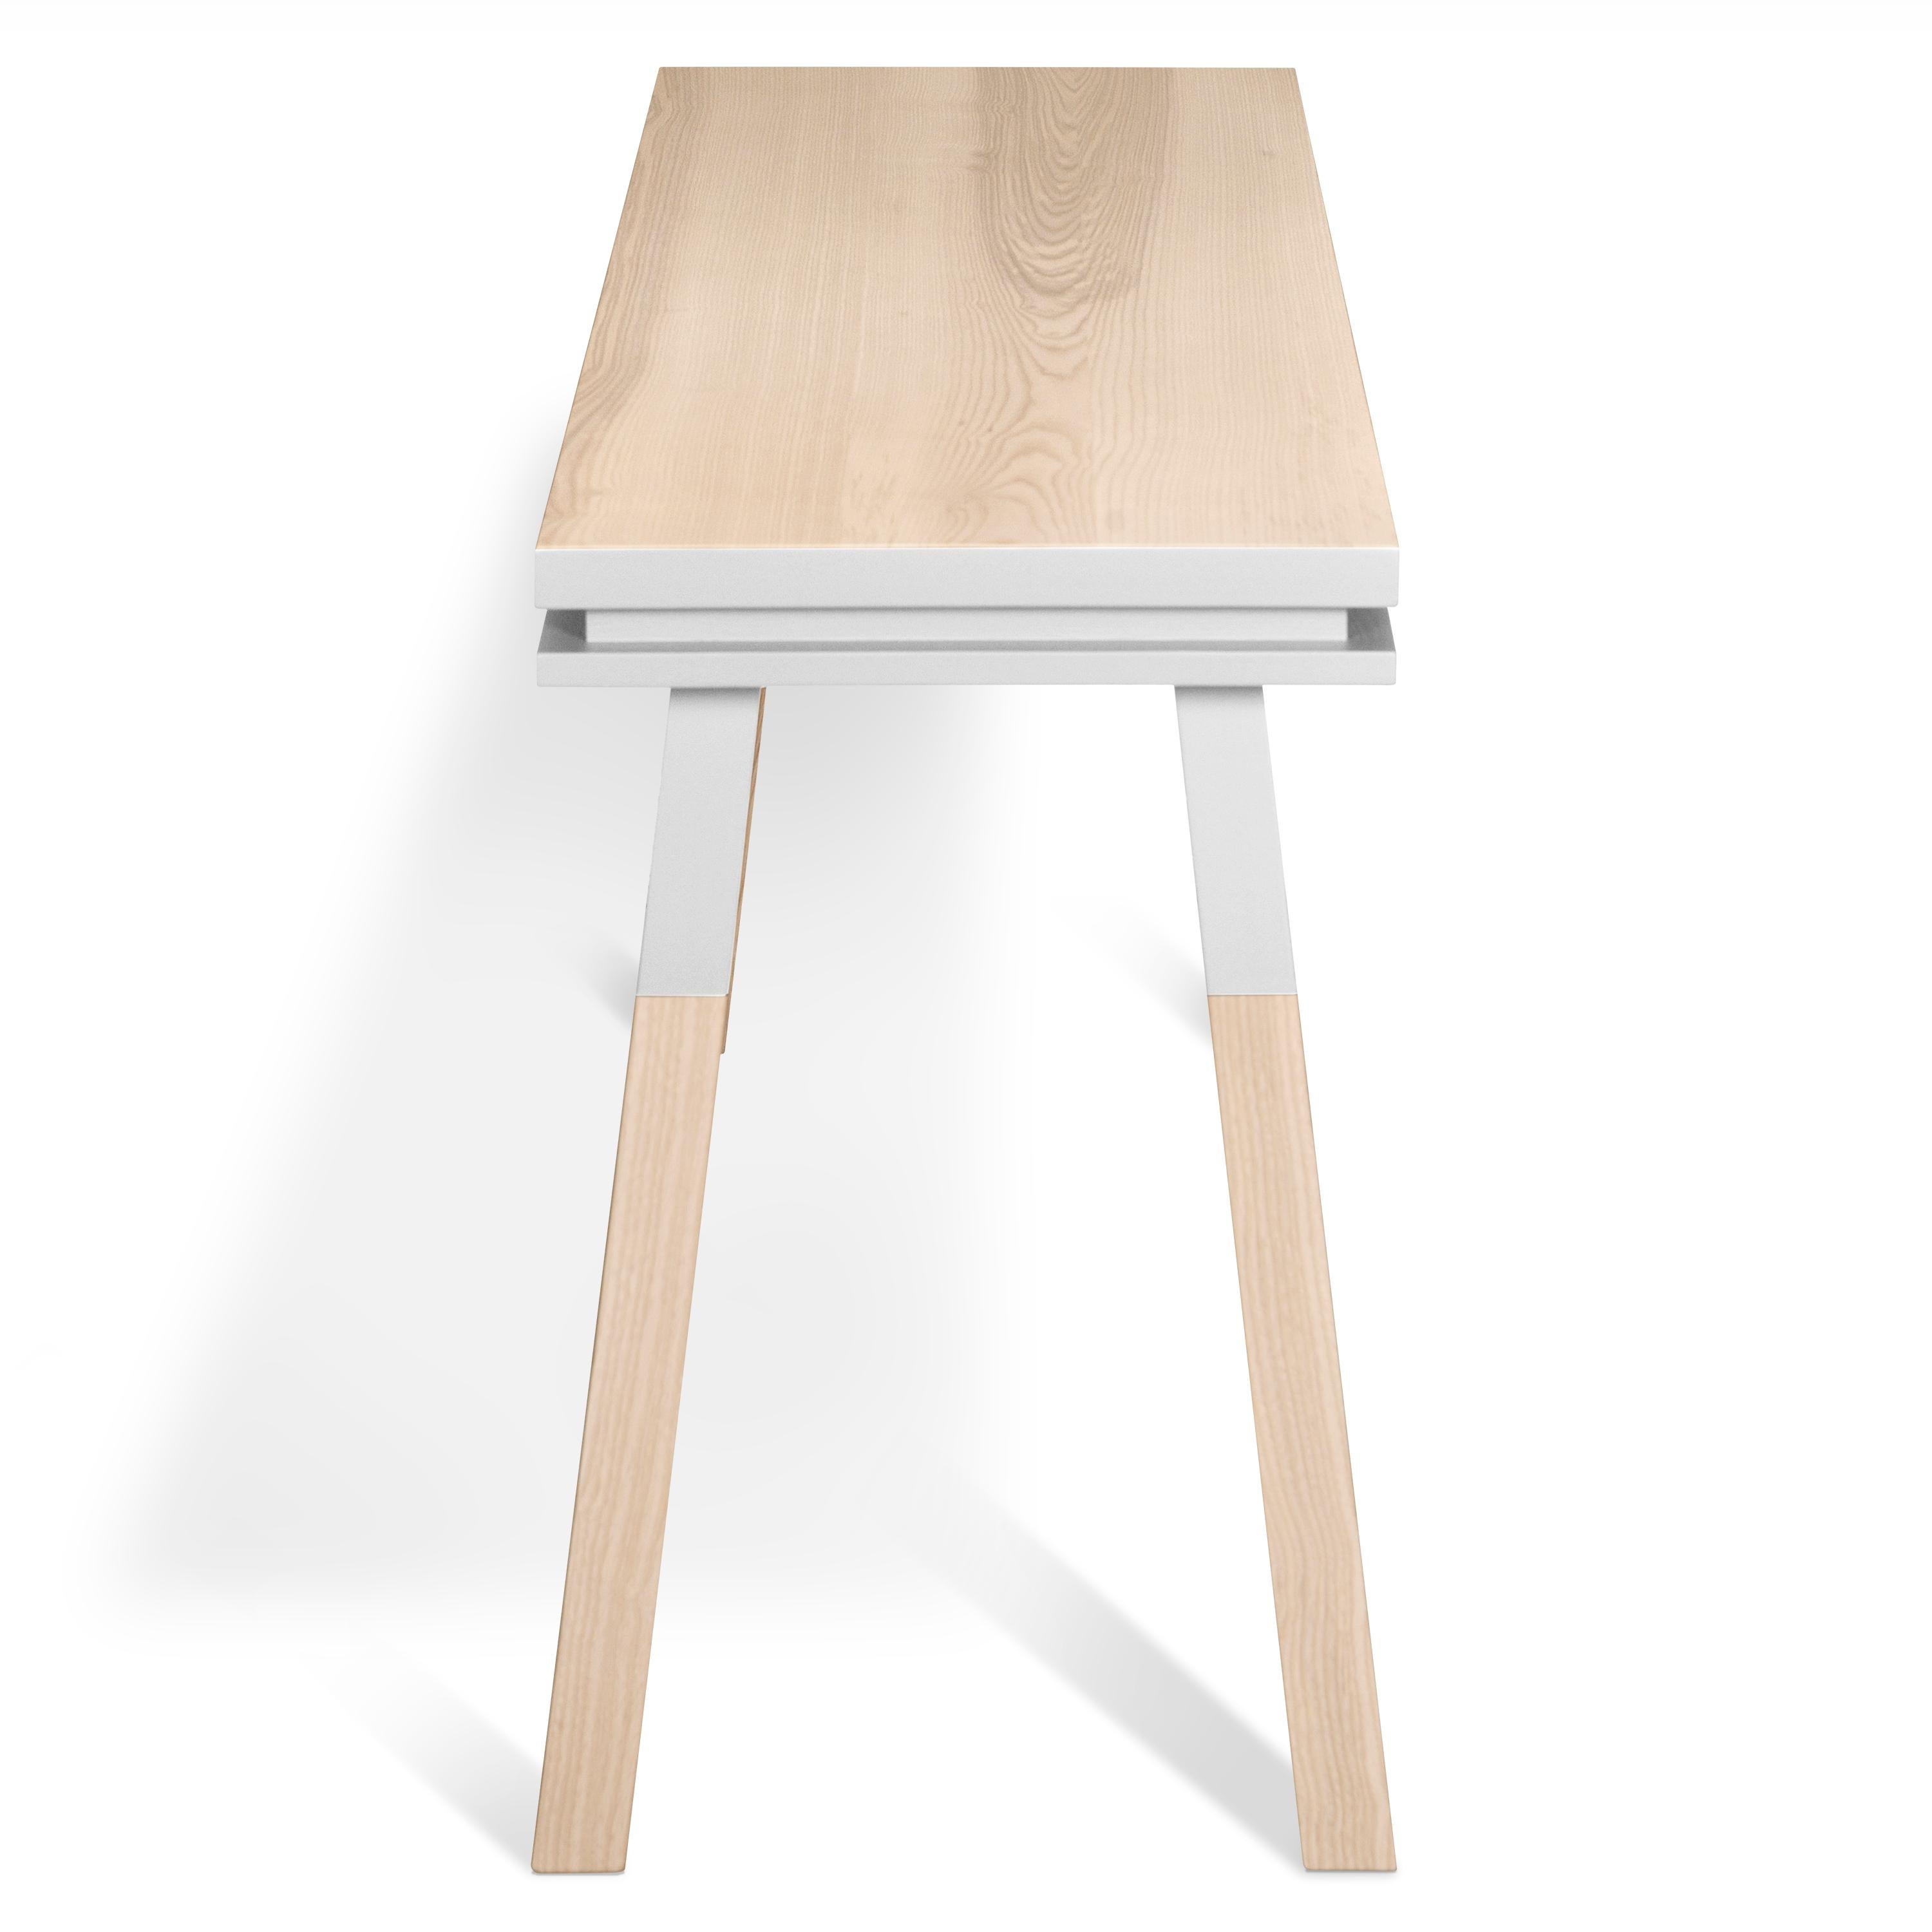 Fait main Table à écrire blanche en bois massif, am designs par Eric Gizard, Paris - French craft  en vente